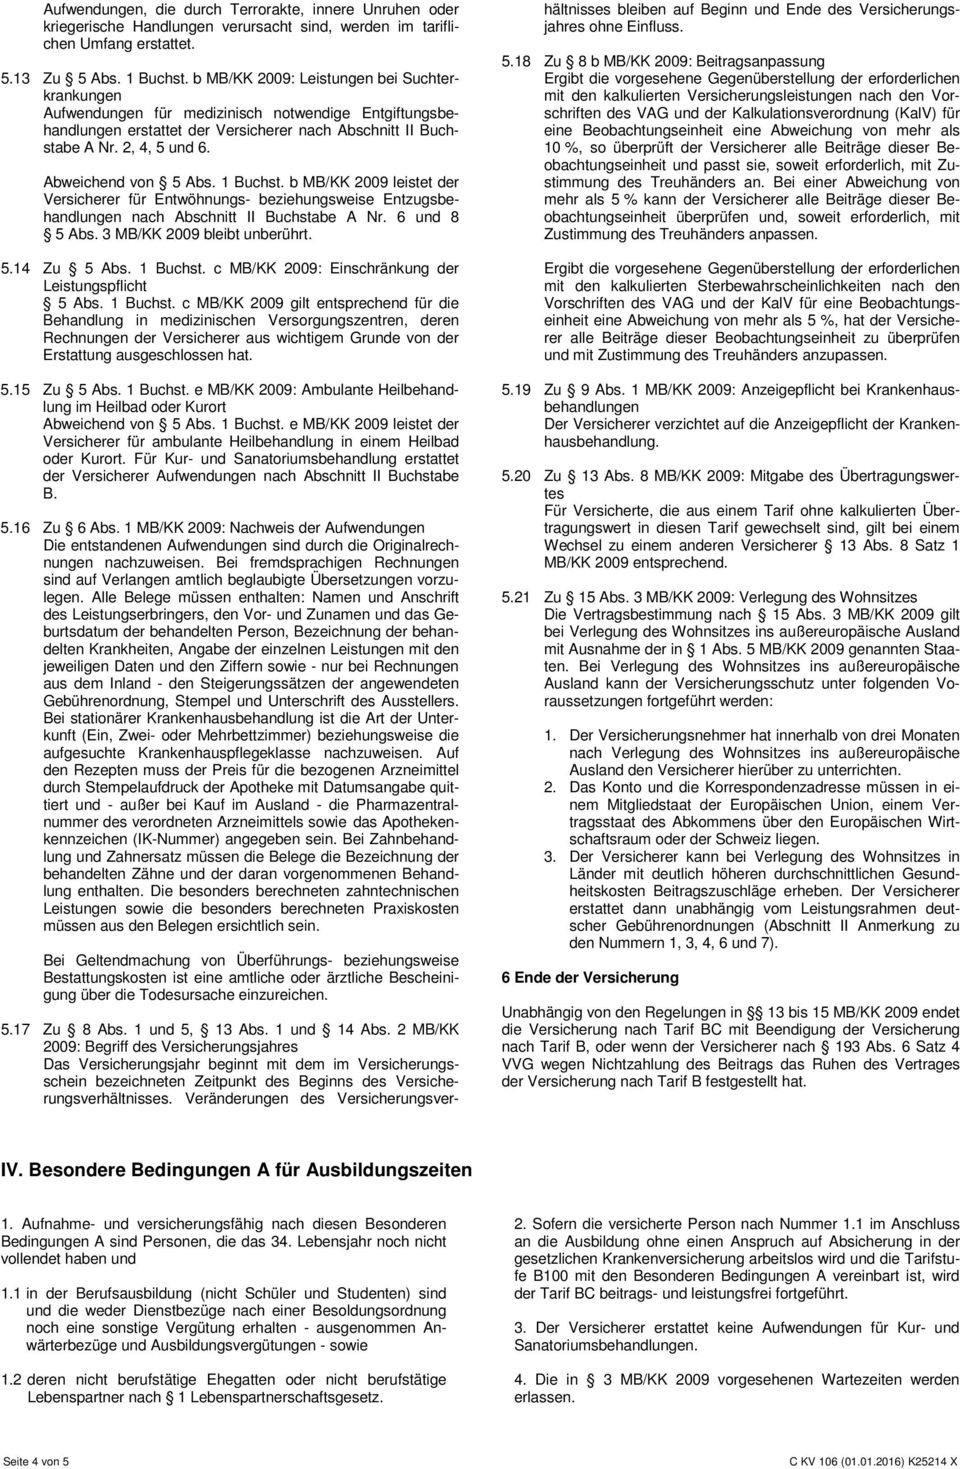 Abweichend von 5 Abs. 1 Buchst. b MB/KK 2009 leistet der Versicherer für Entwöhnungs- beziehungsweise Entzugsbehandlungen nach Abschnitt II Buchstabe A Nr. 6 und 8 5 Abs.